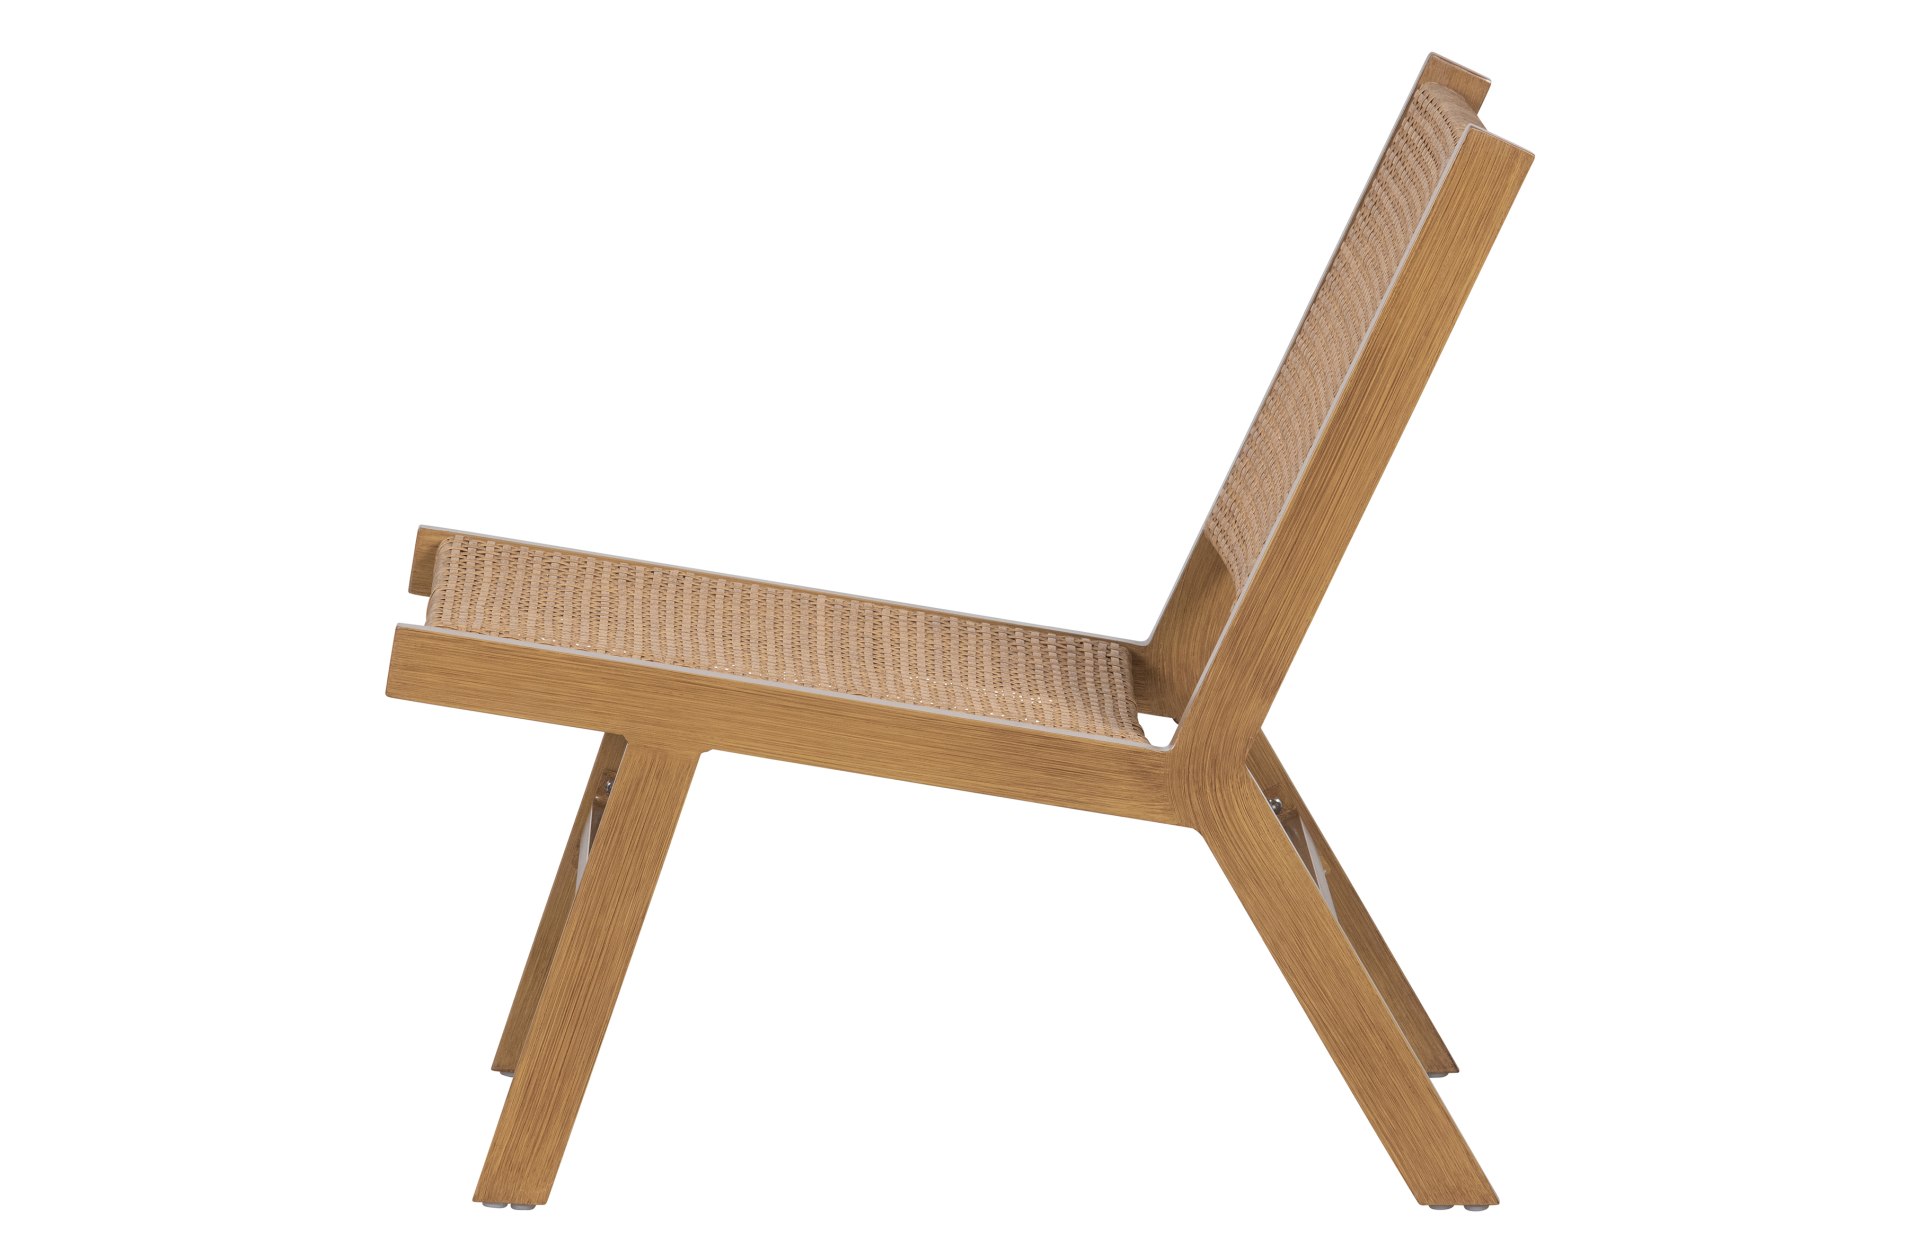 Gartensessel Puk gefertigt aus Aluminium, in einem Natur Farbton. Das Design ist modern. Der Sessel ist In & Outdoor einsetzbar.